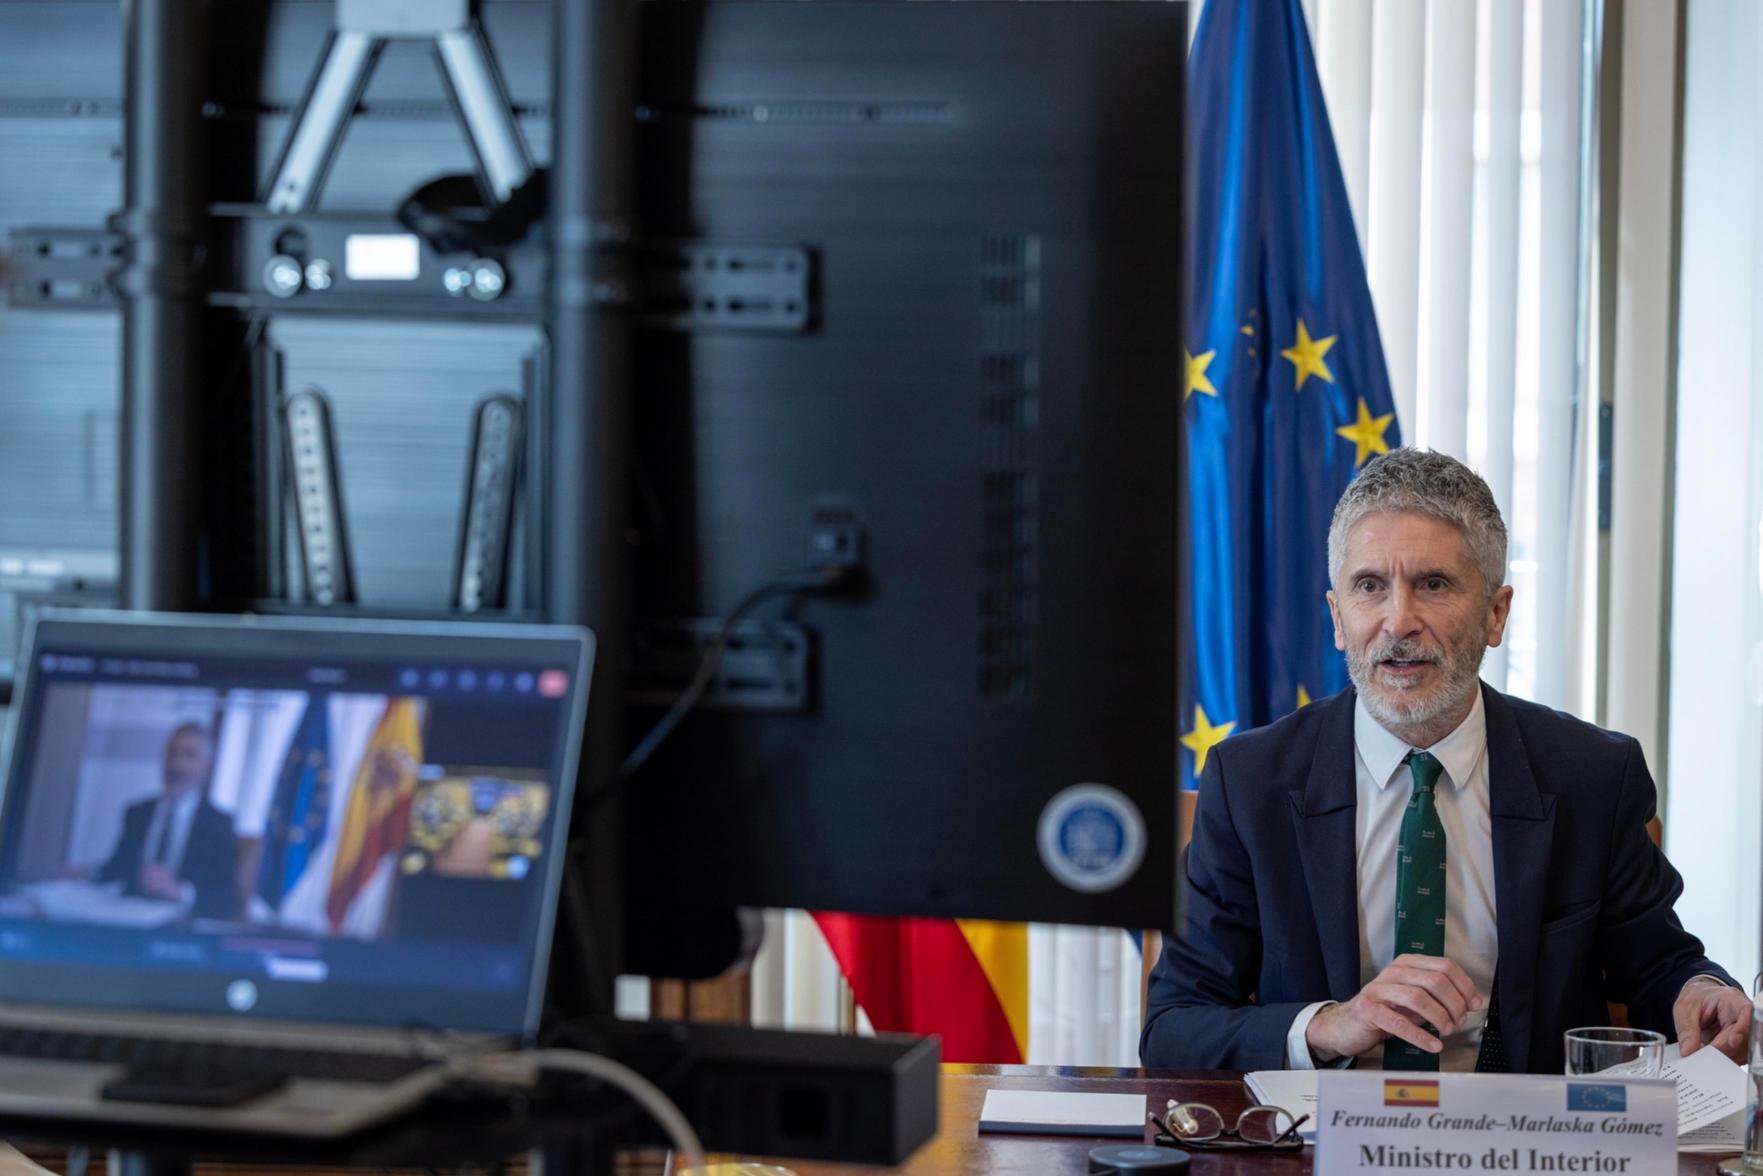 Grande-Marlaska pide a los europarlamentarios “mayor implicación” en política migratoria